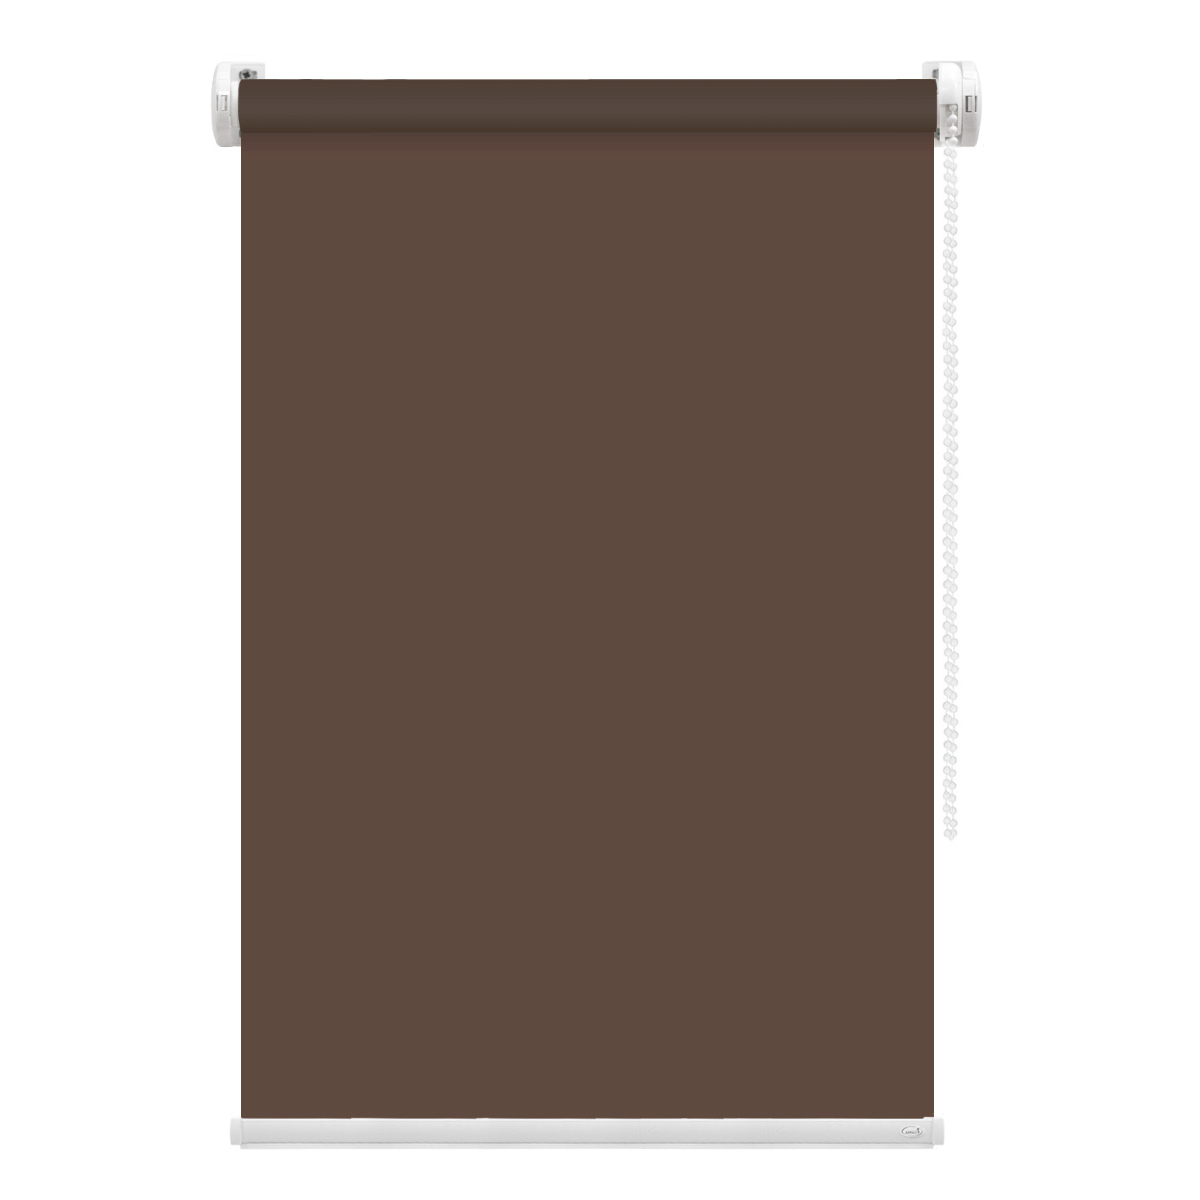 Рулонная штора FixLine Amigo Basic коричневая 90х160 см рулонная штора fixline amigo basic коричневая 50х160 см